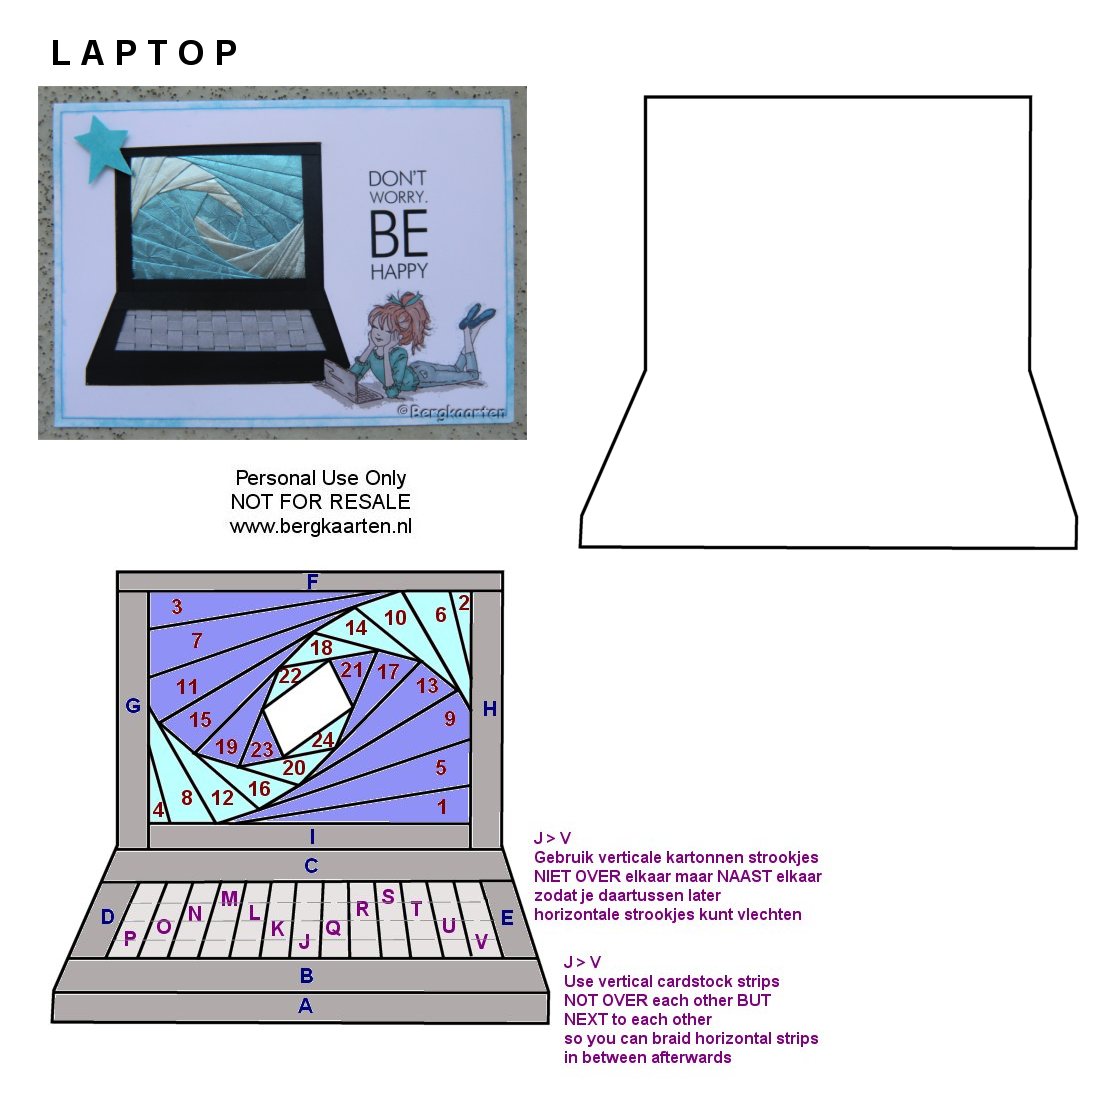 Irisvouwen: Laptop